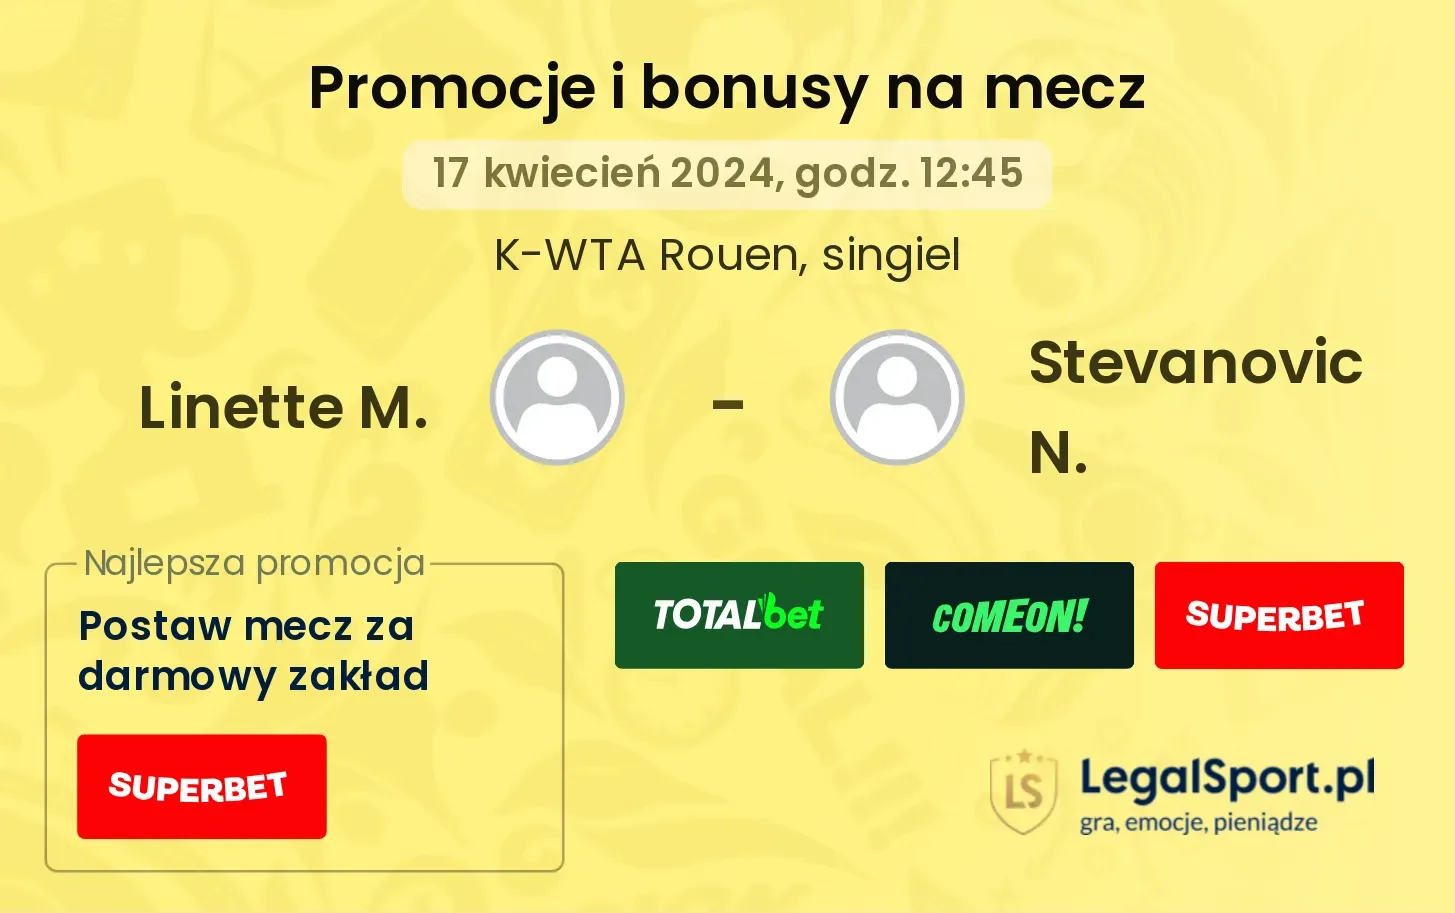 Linette M. - Stevanovic N. promocje bonusy na mecz